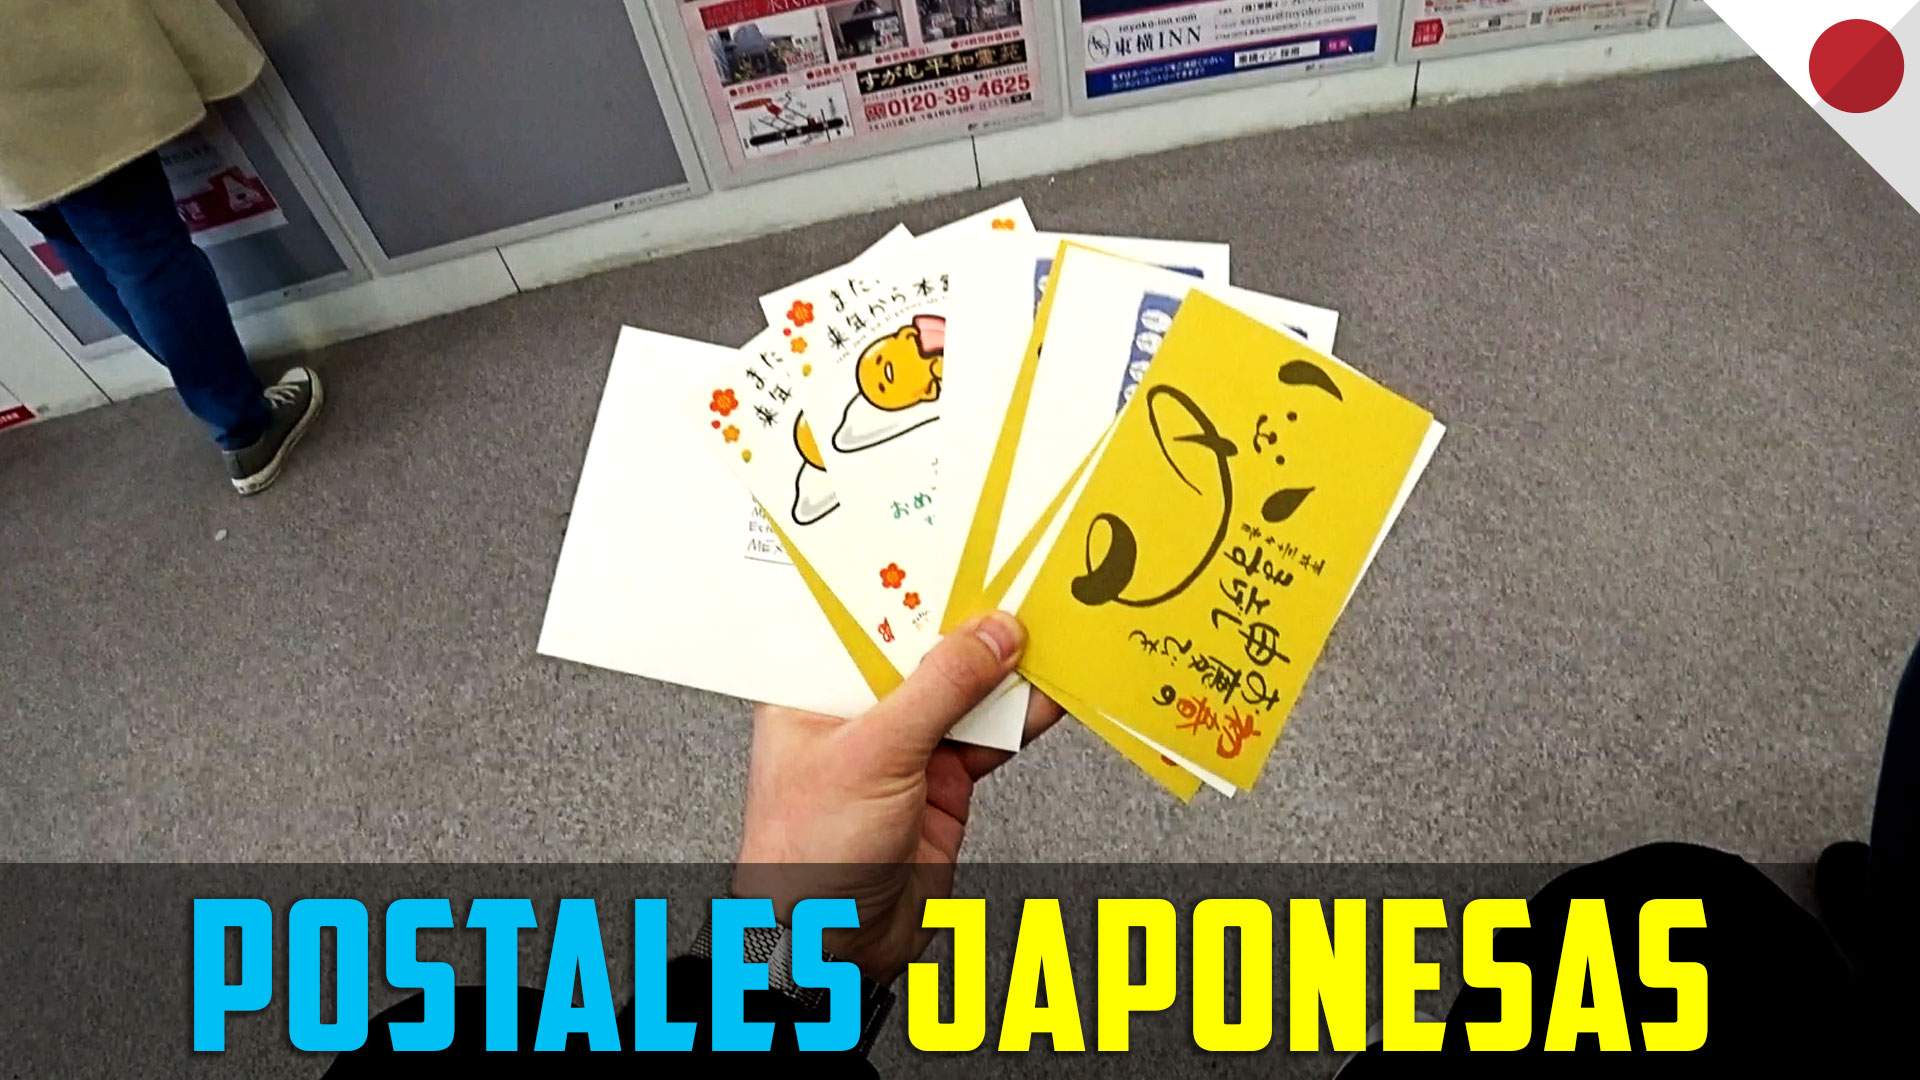 Postales japonesas